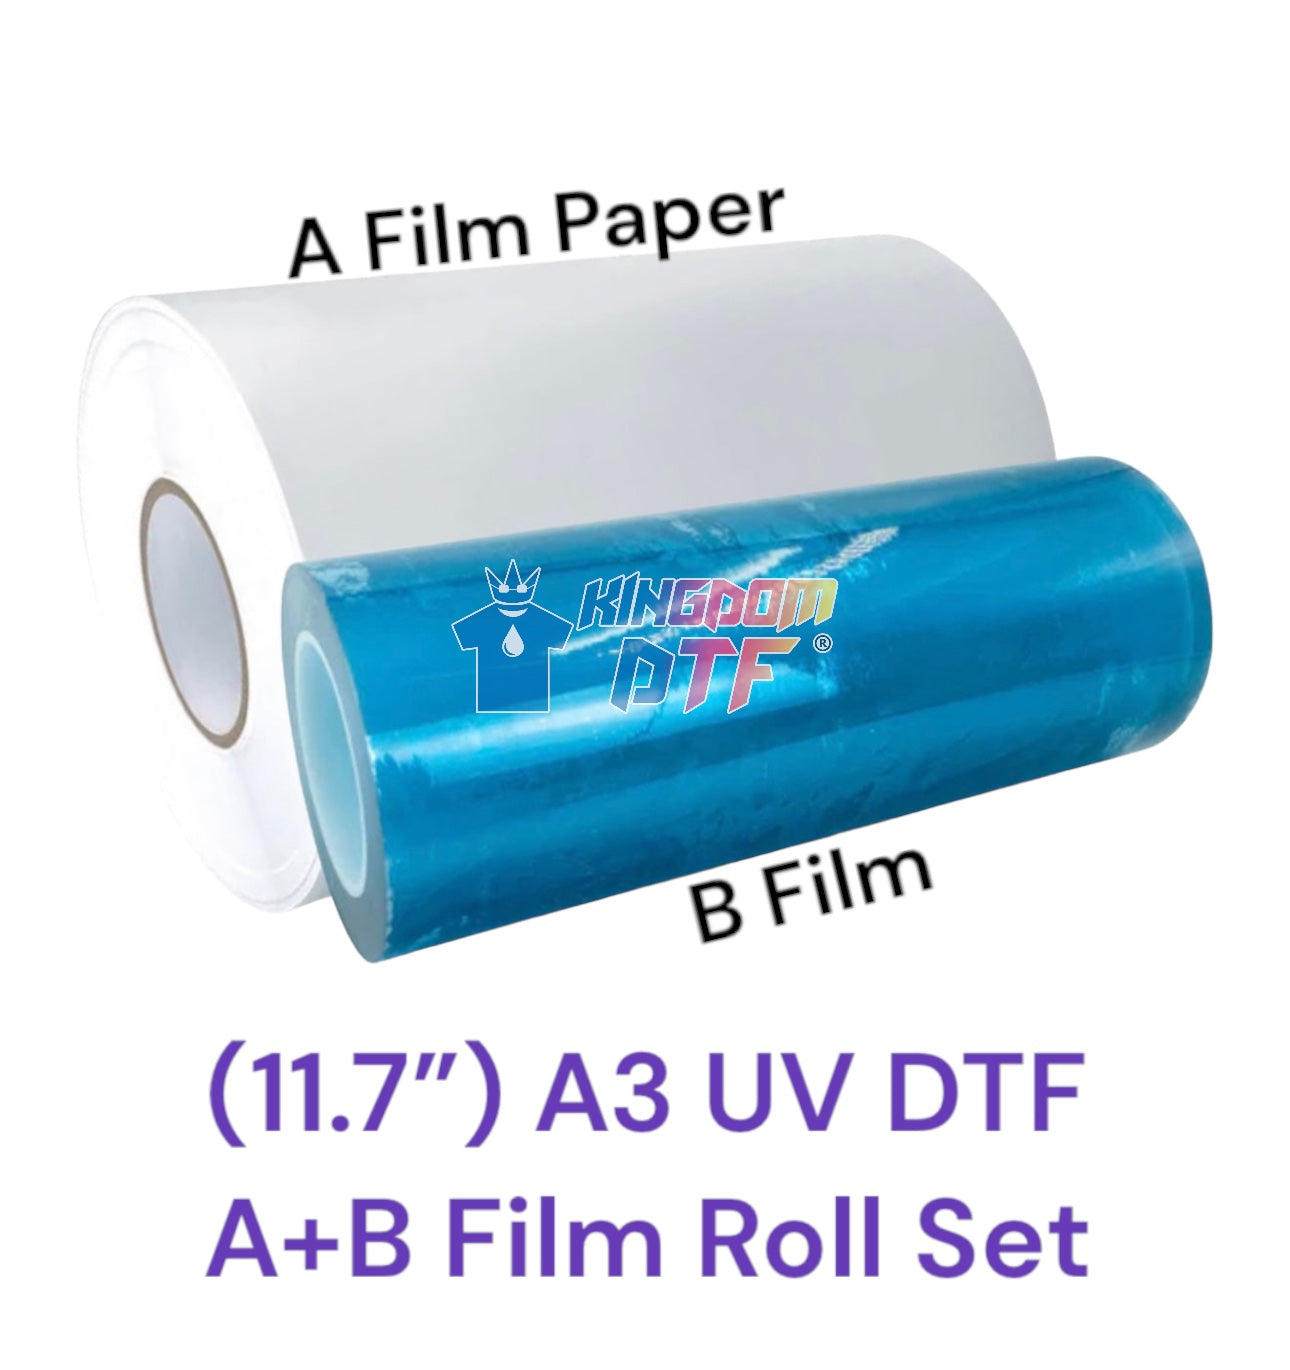 UV DTF PAPER Film 11.7" x 328' (100m) - A+B Film Roll Set (PAPER)